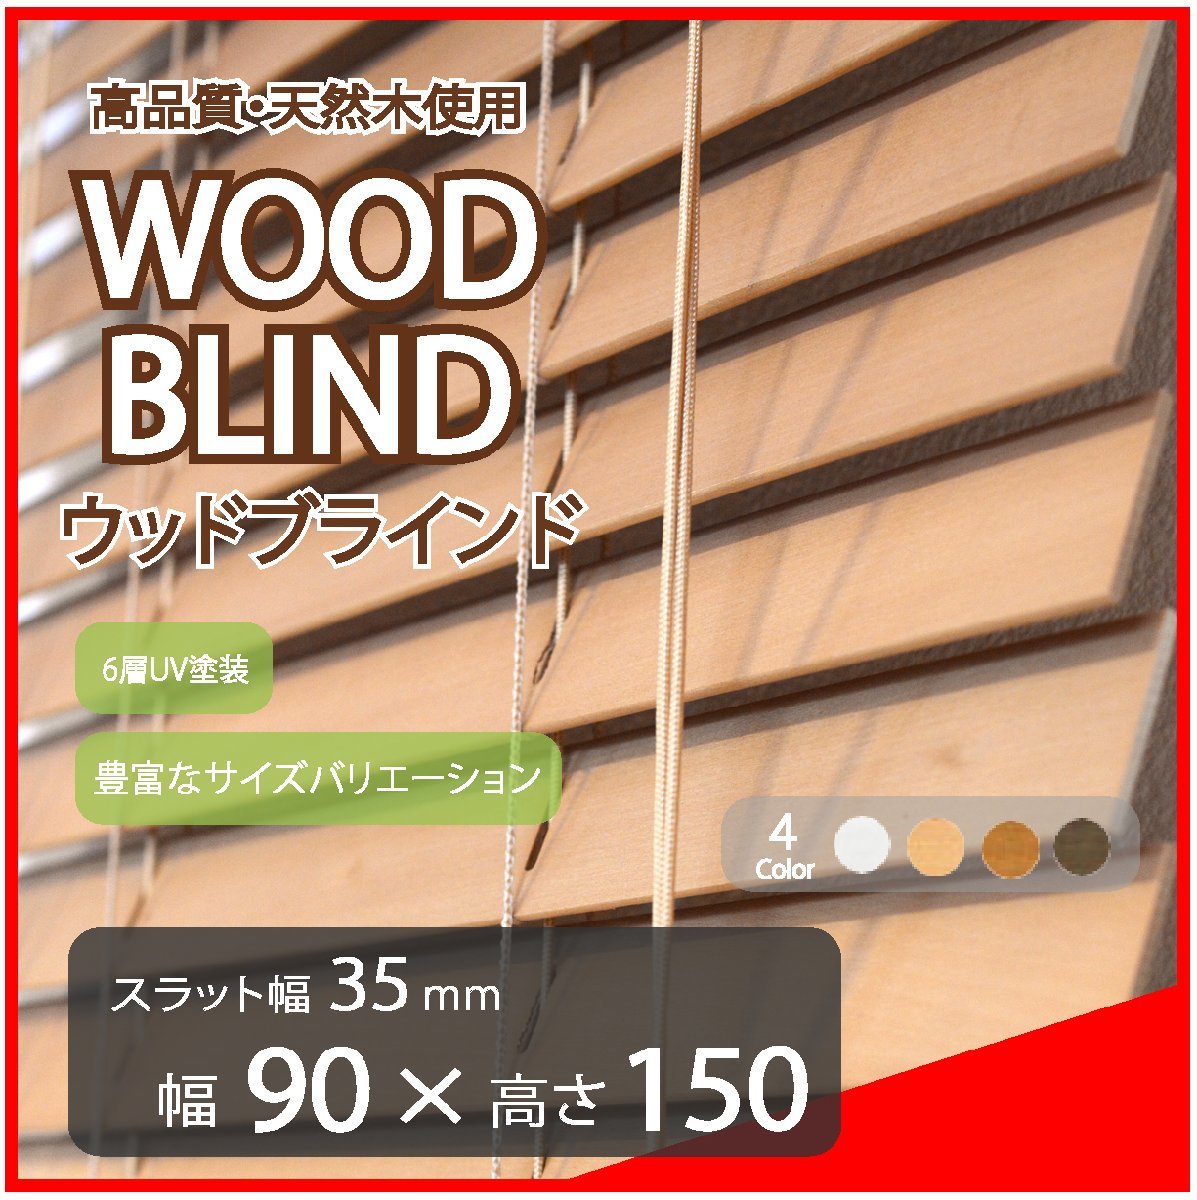 高品質 ウッドブラインド 木製 ブラインド 既成サイズ スラット(羽根)幅35mm 幅90cm×高さ150cm ライトブラウン